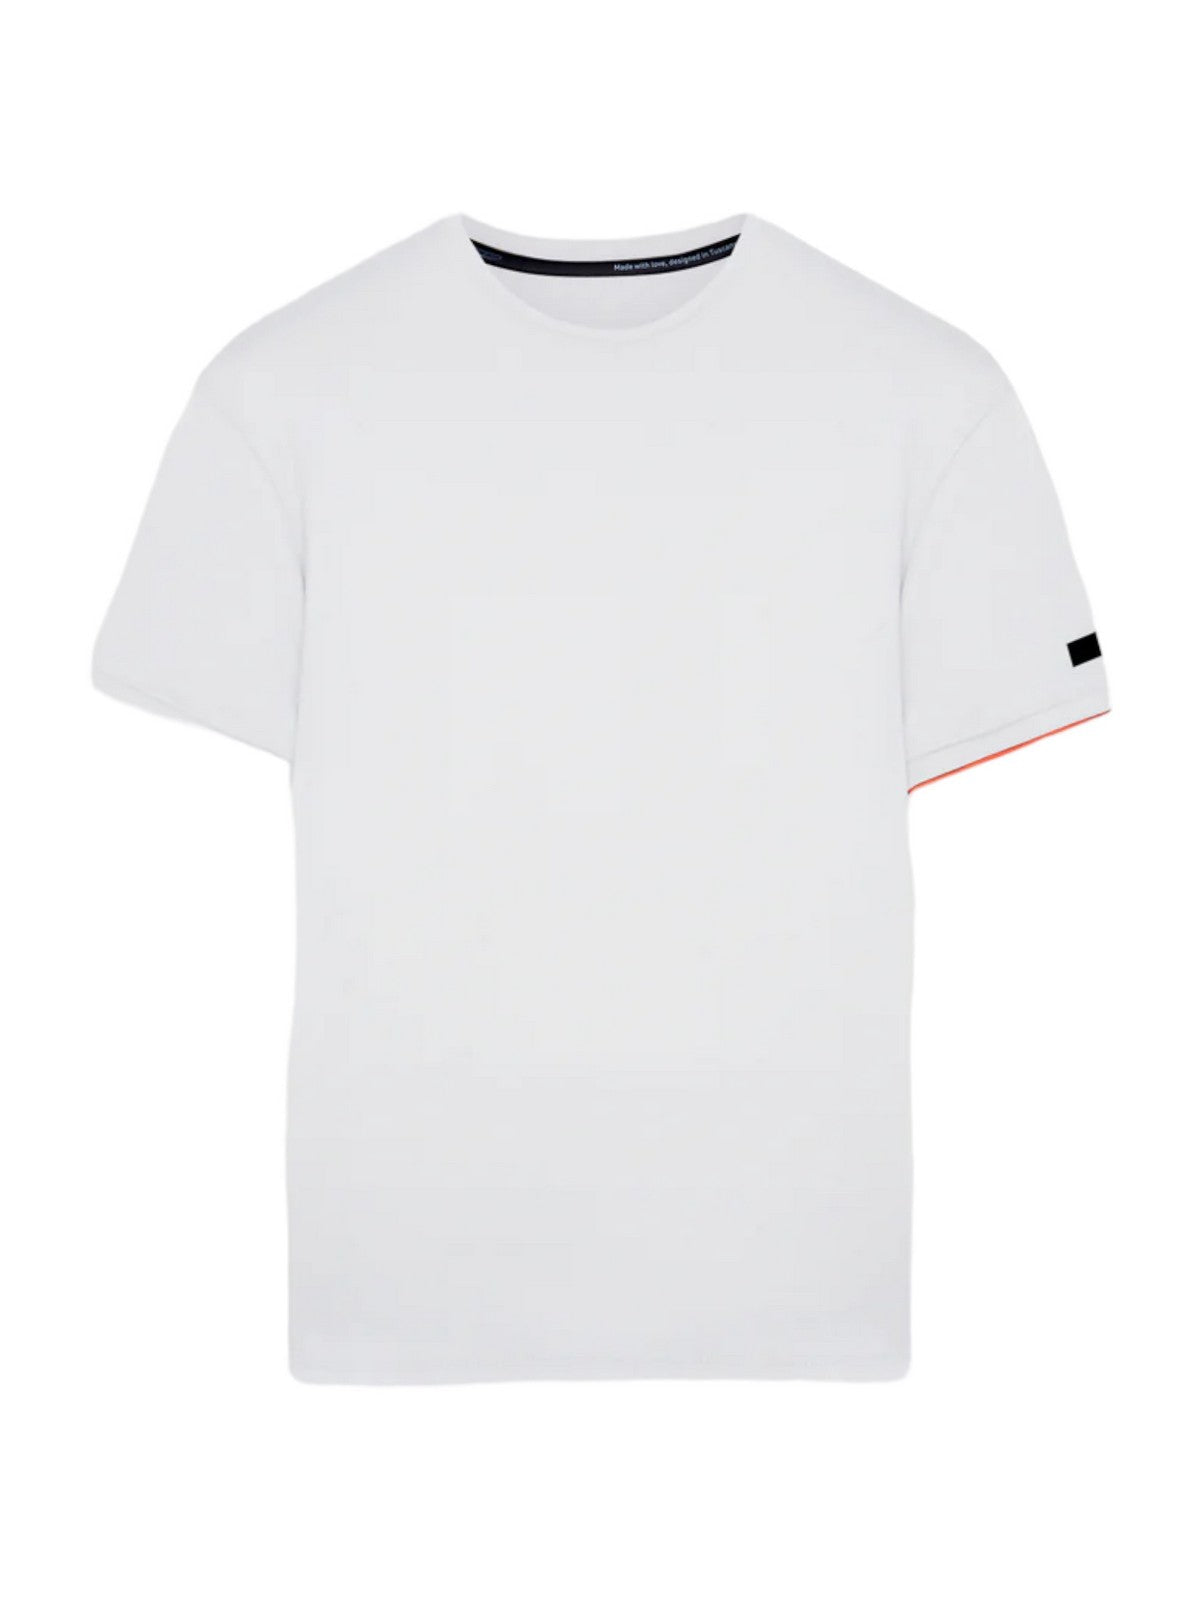 RRD T-Shirt et Polo Hommes 23138 09 Blanc